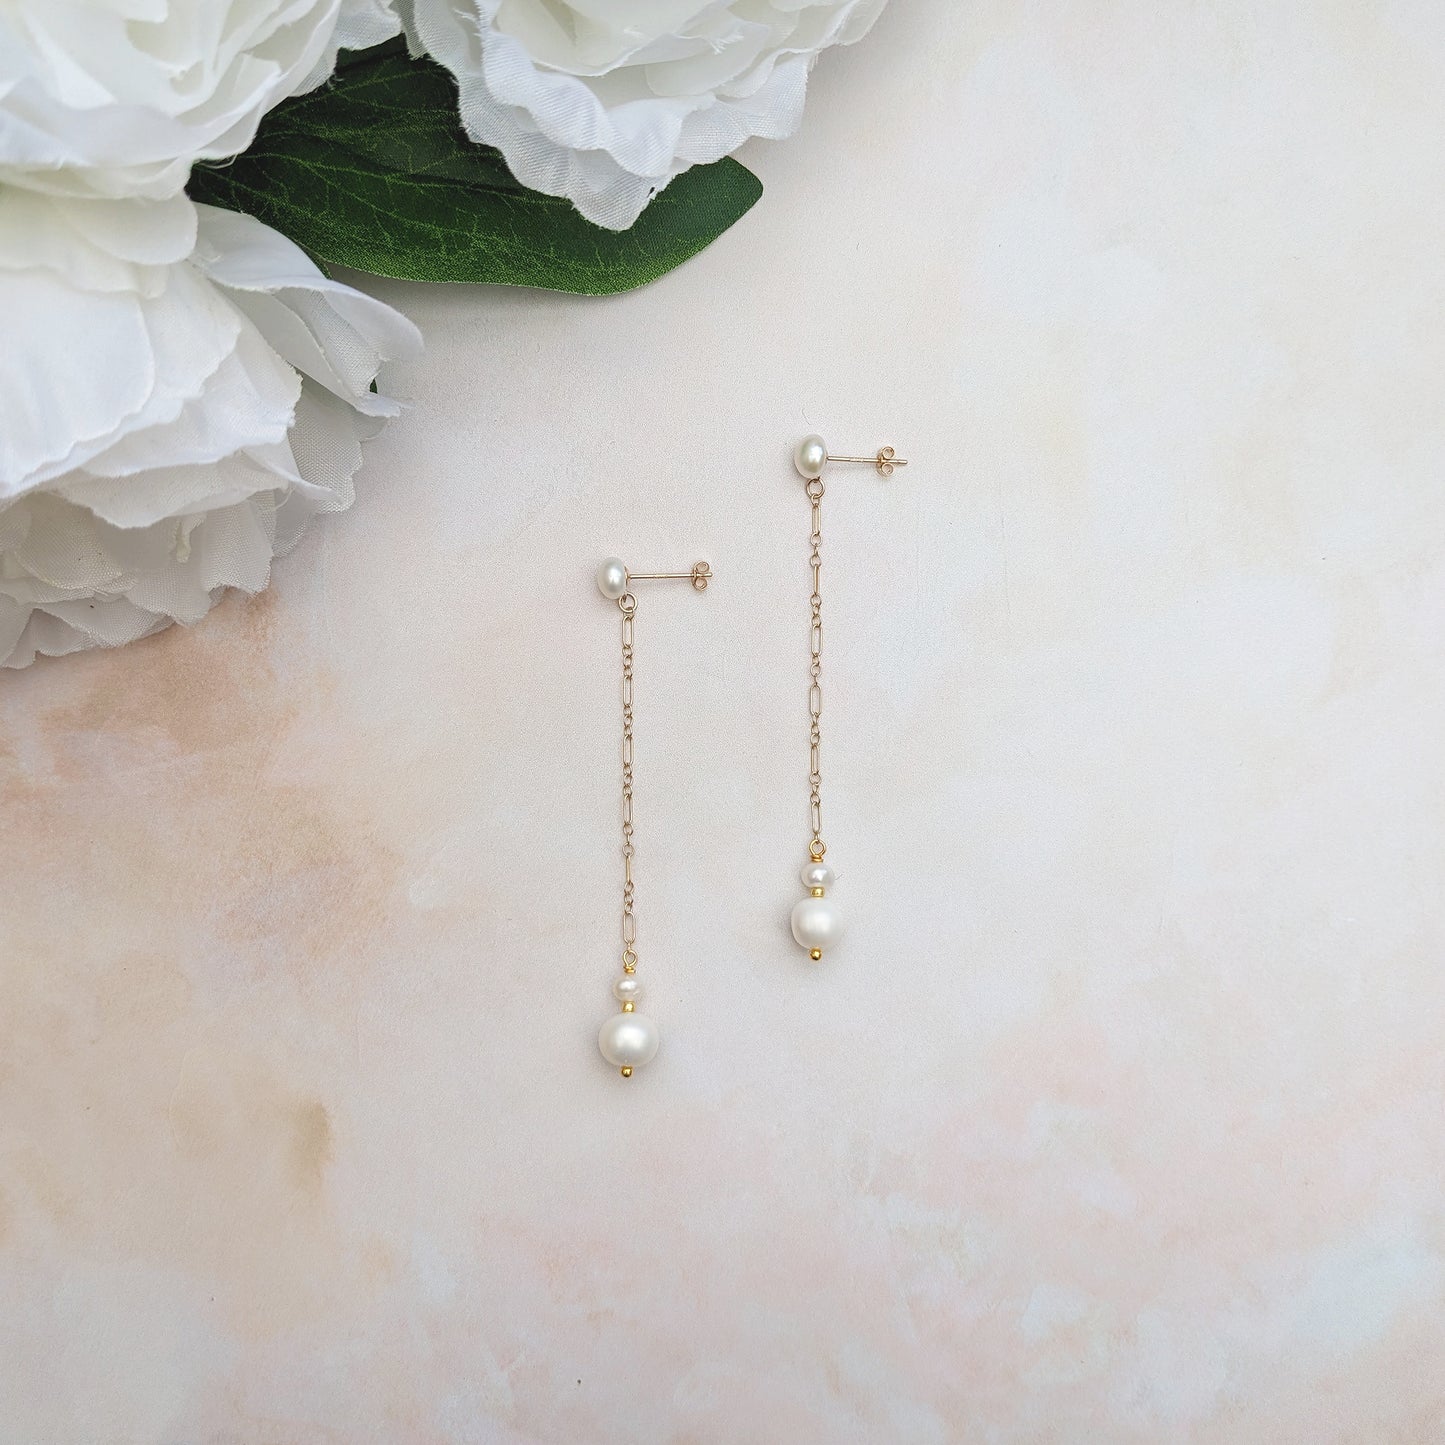 Pearl bridal jewellery for weddings - Susie Warner